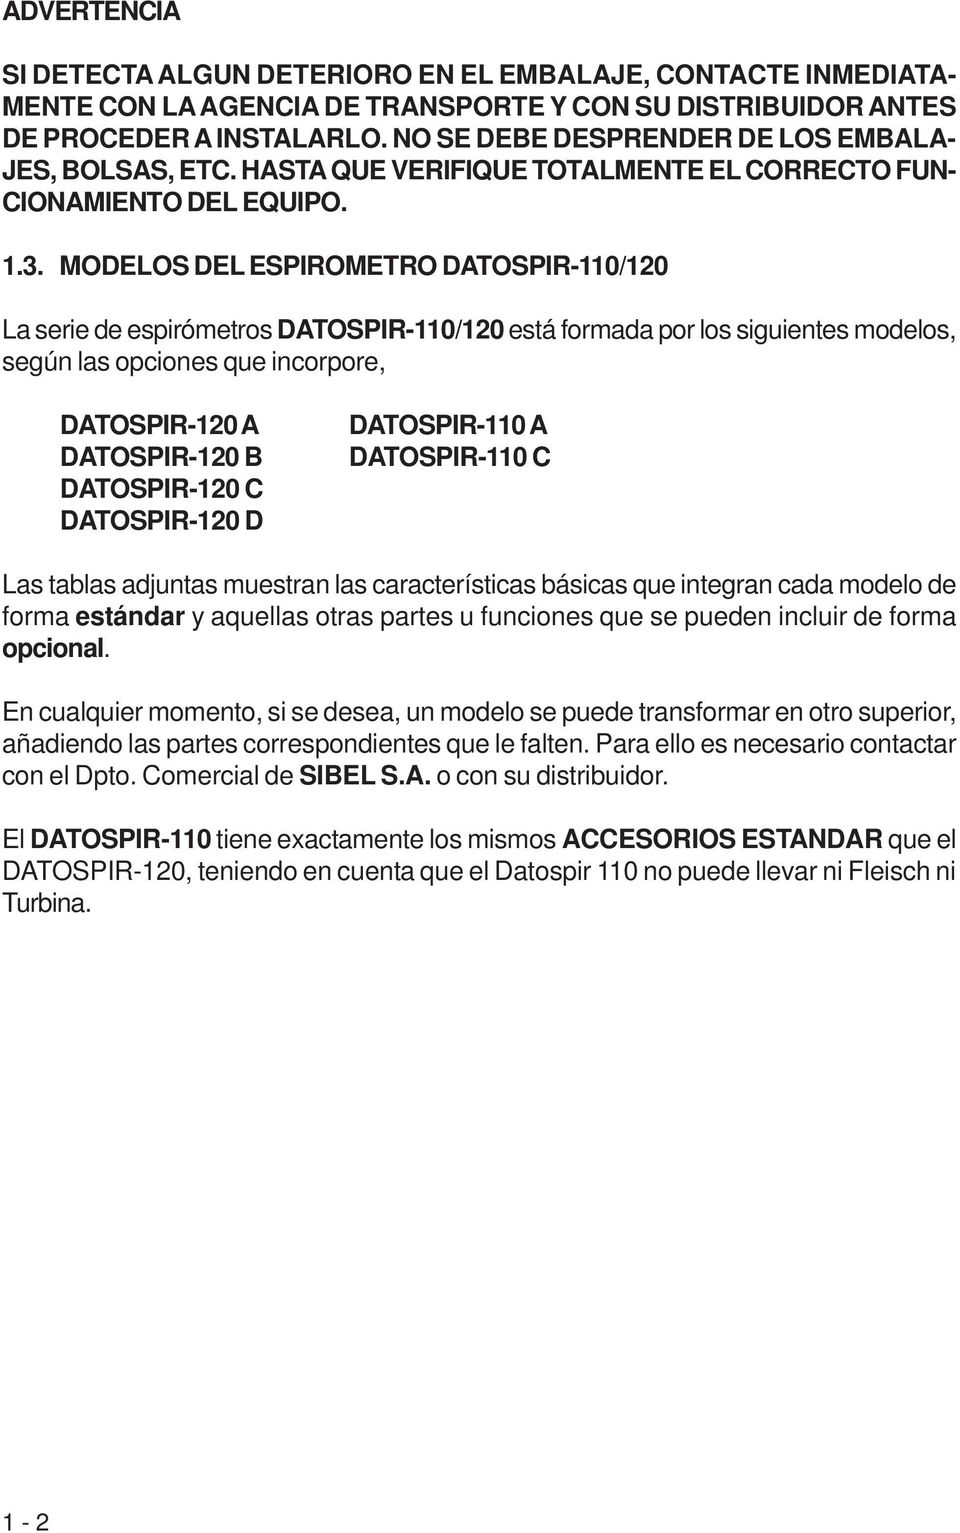 MODELOS DEL ESPIROMETRO DATOSPIR-110/120 La serie de espirómetros DATOSPIR-110/120 está formada por los siguientes modelos, según las opciones que incorpore, DATOSPIR-120 A DATOSPIR-120 B